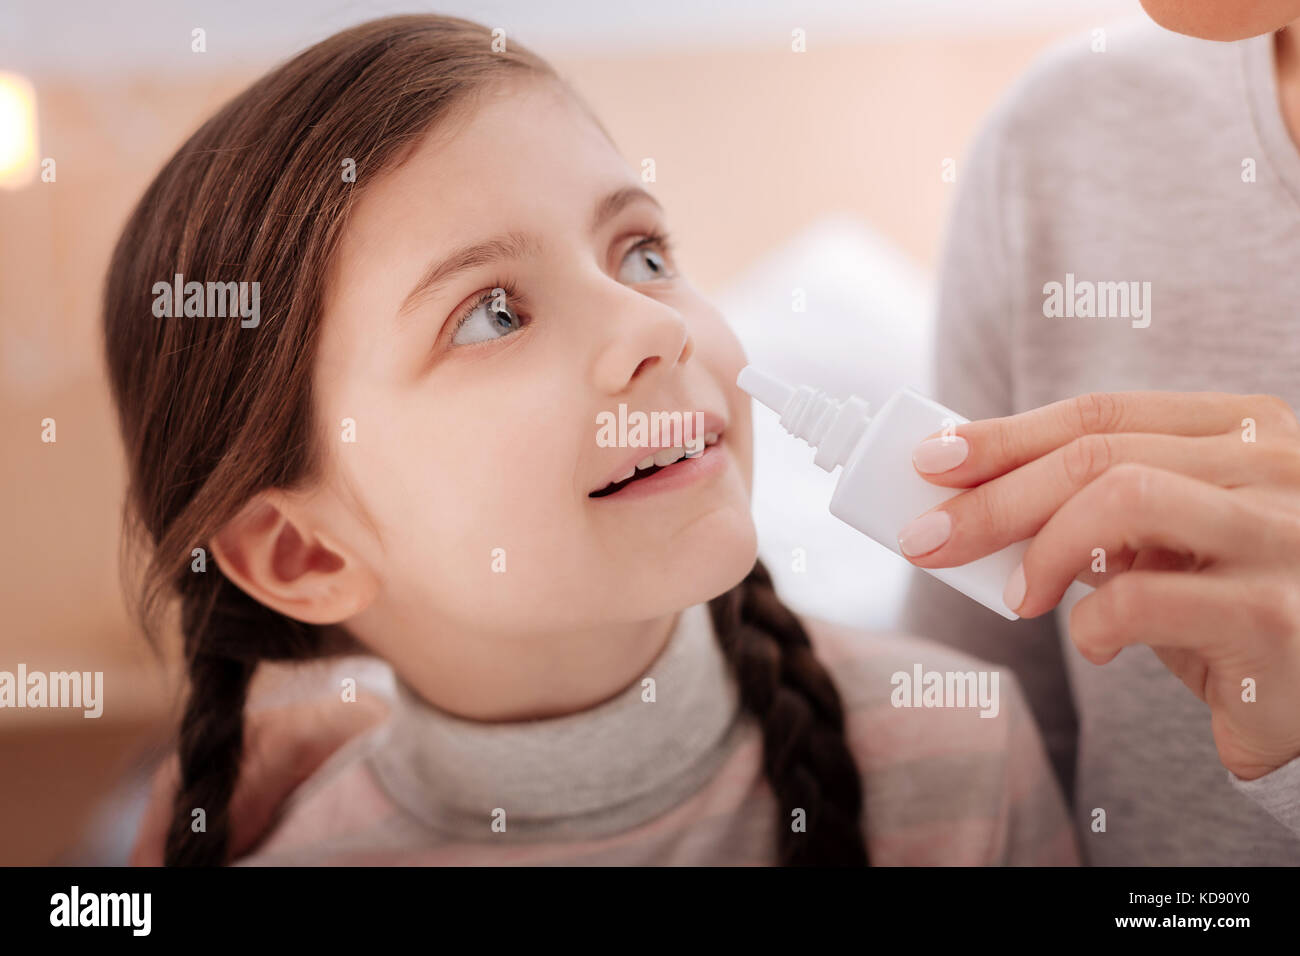 Recuperando curioso niño con gotas nasales Foto de stock